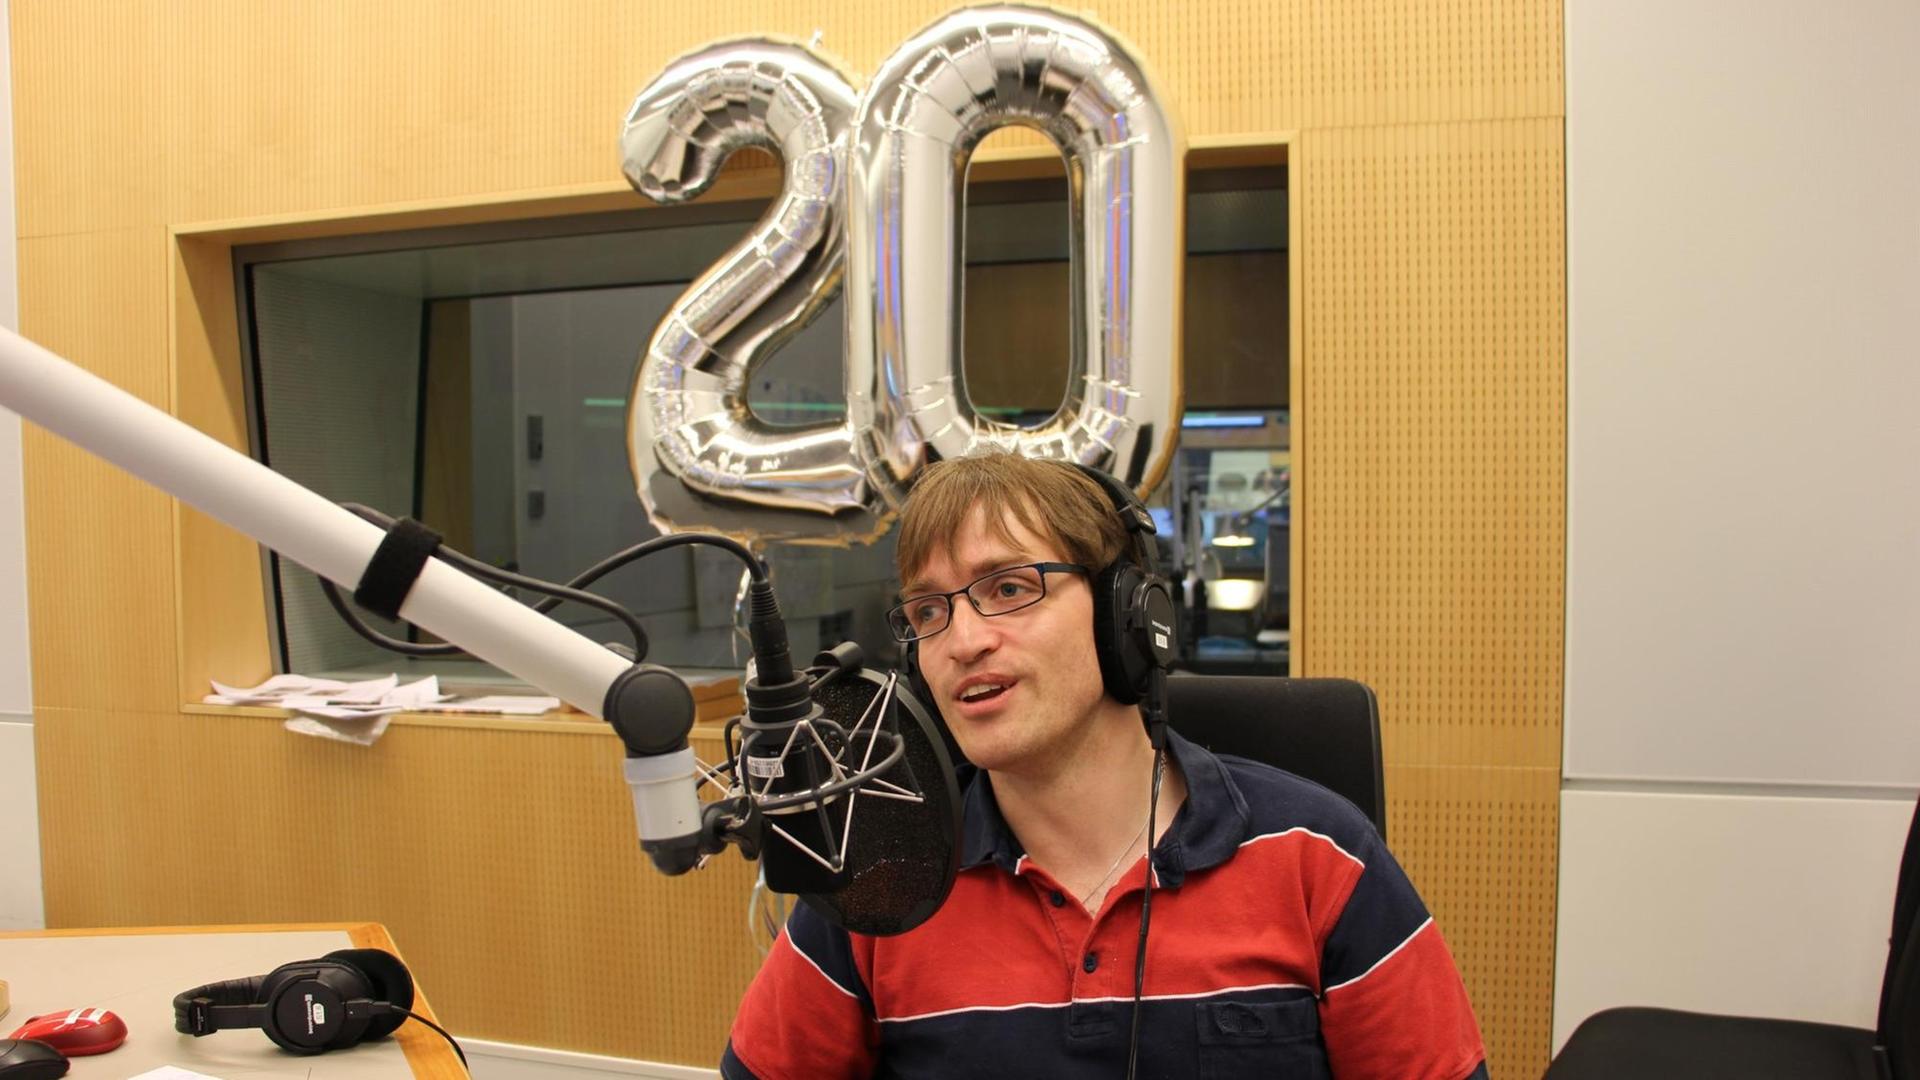 Ein Mann spricht im Radiostudio in ein Mikrofon, während im Hintergrund zwei silberne Ballons in Form einer 20 zu sehen sind